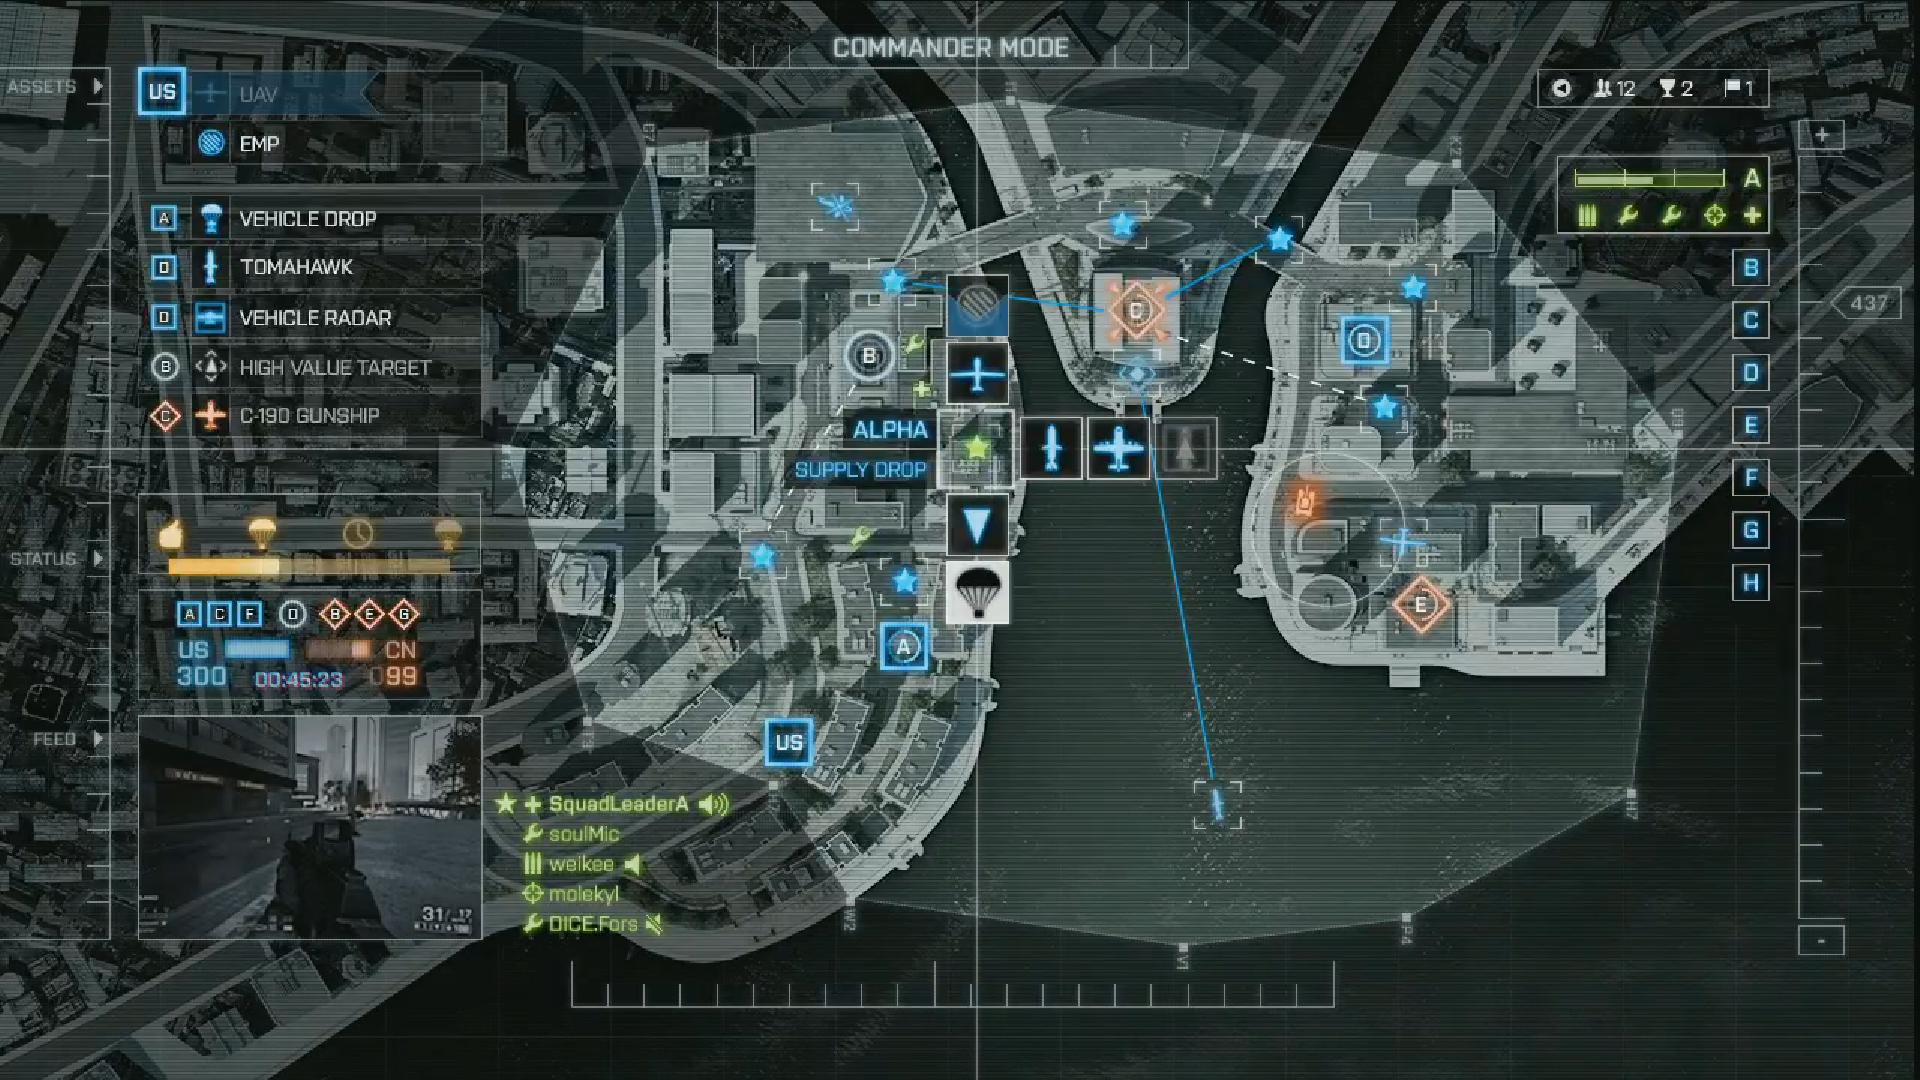 DICE Explains Battlefield 4’s Commander Selection Process